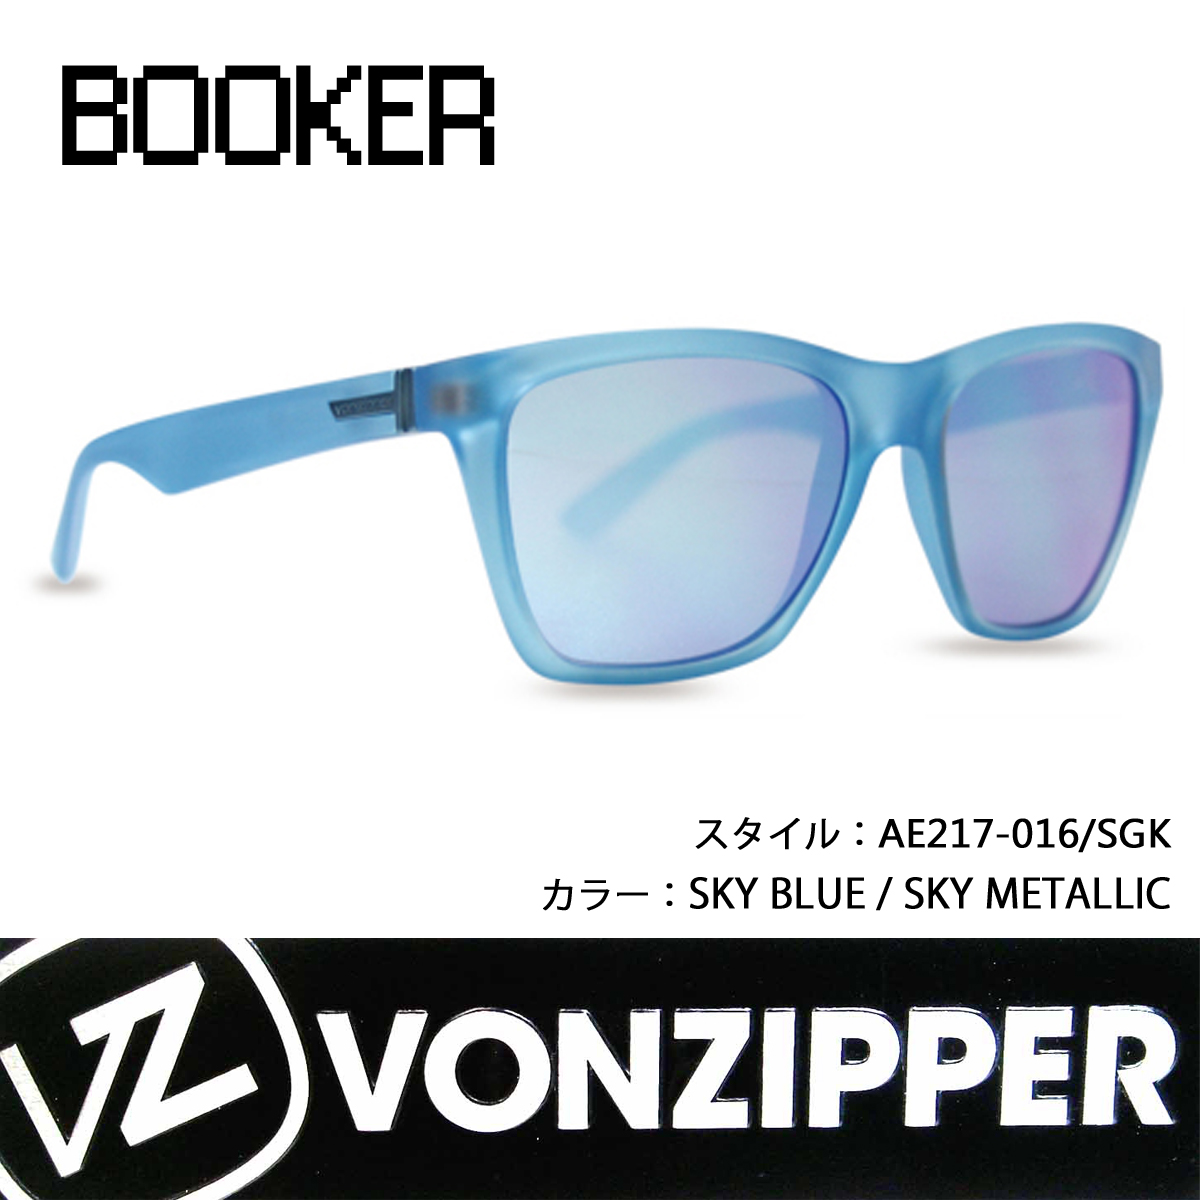 VONZIPPER ボンジッパー サングラス THE BOOKER ブーカー 品番 AE217-016 SGKカラー日本正規代理店 | オーシャン  スポーツ